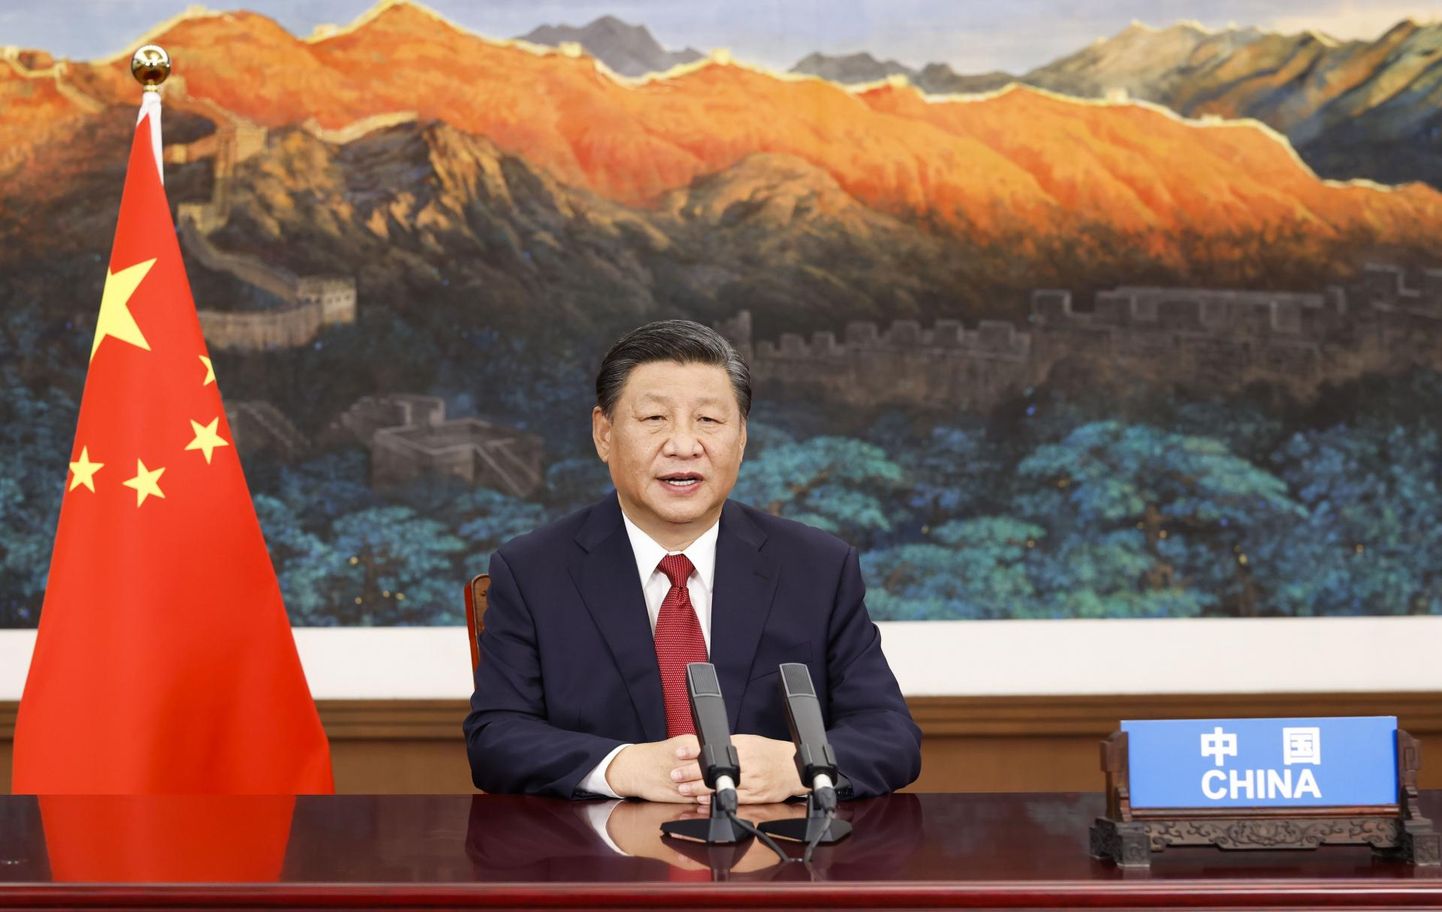 Hiina riigipea Xi Jinping.